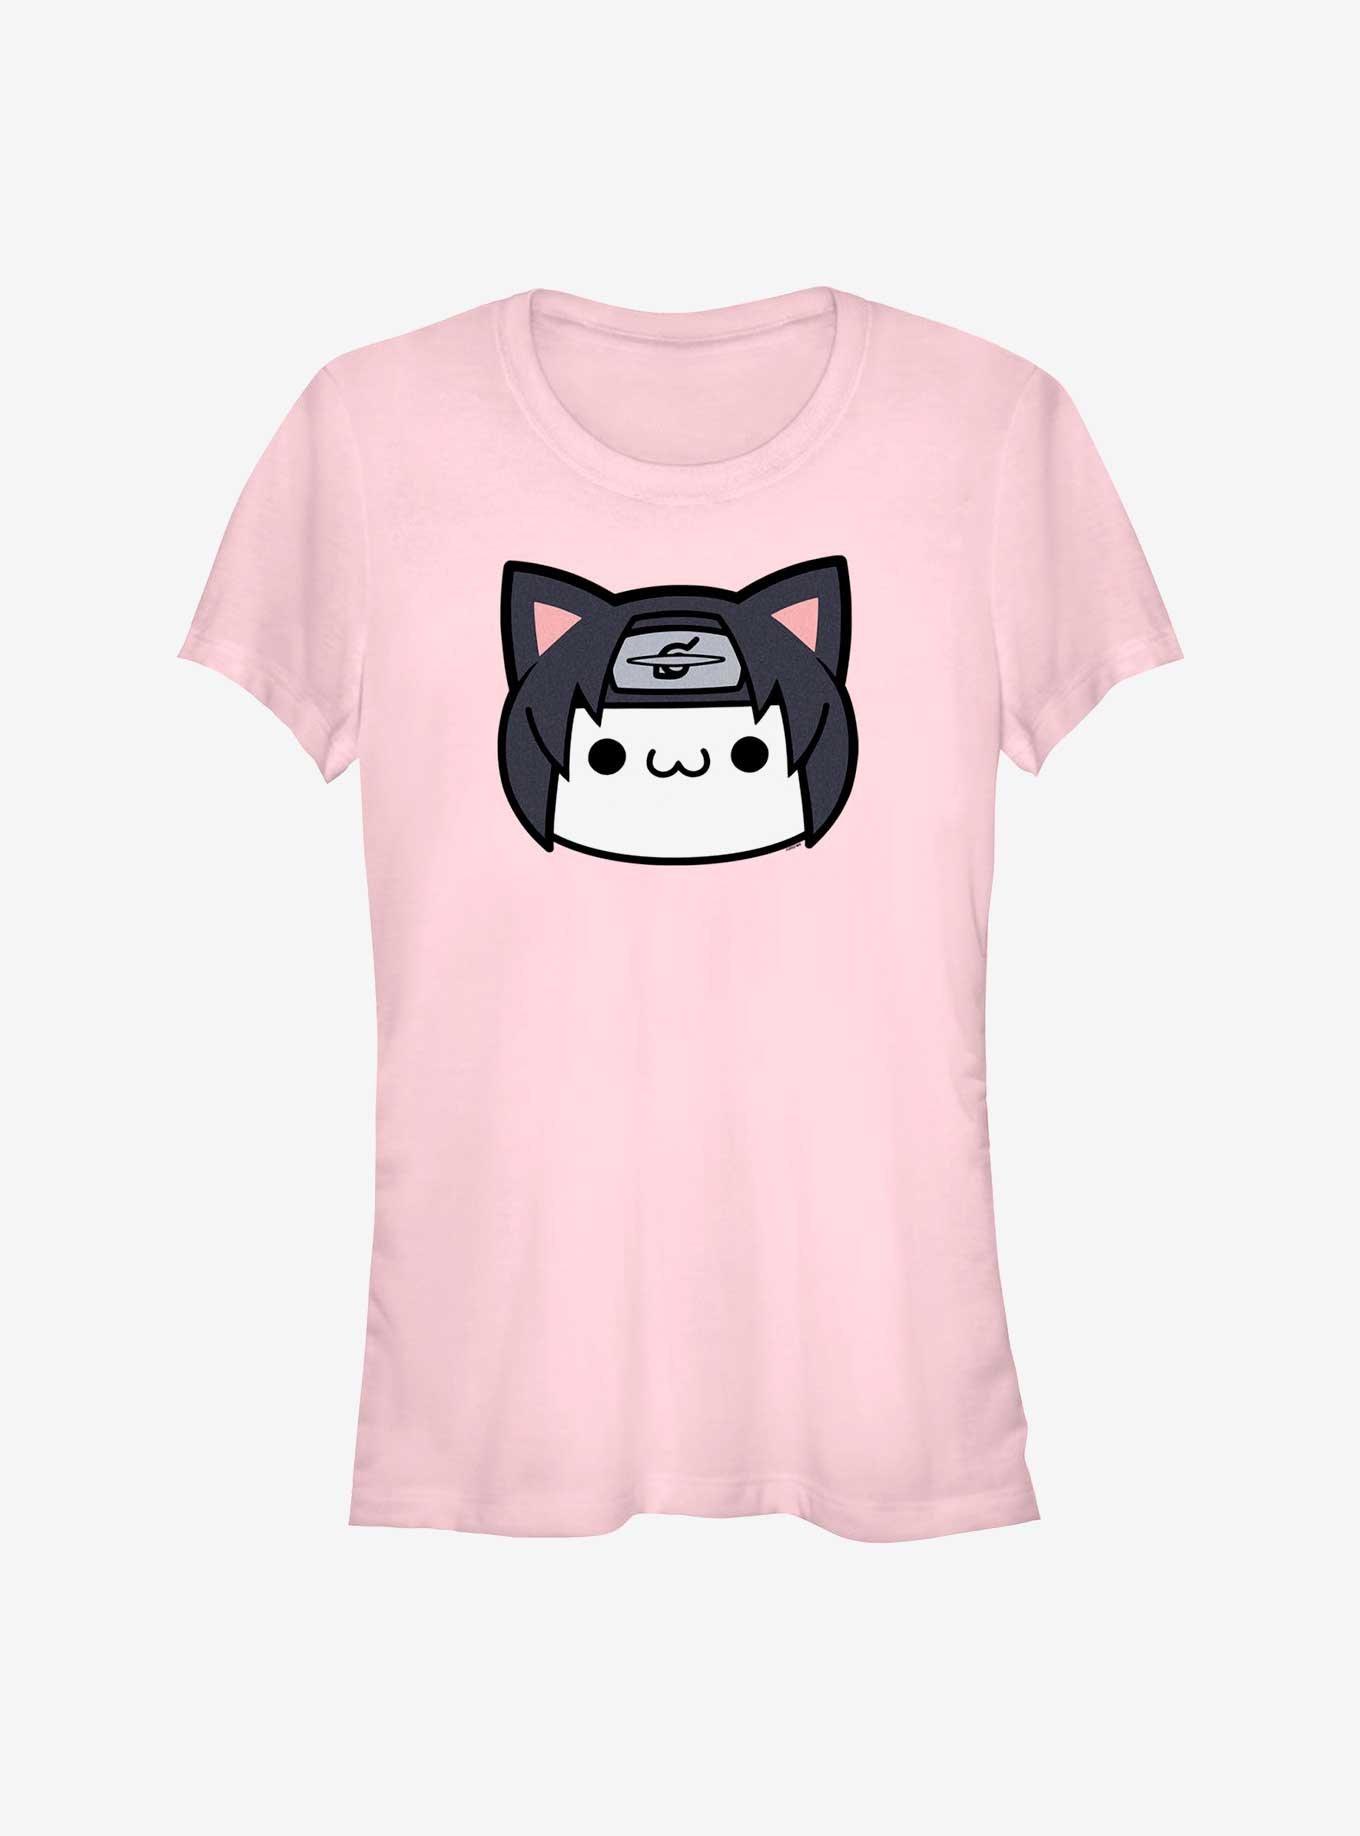 Naruto Itachi Cat Face Girls T-Shirt